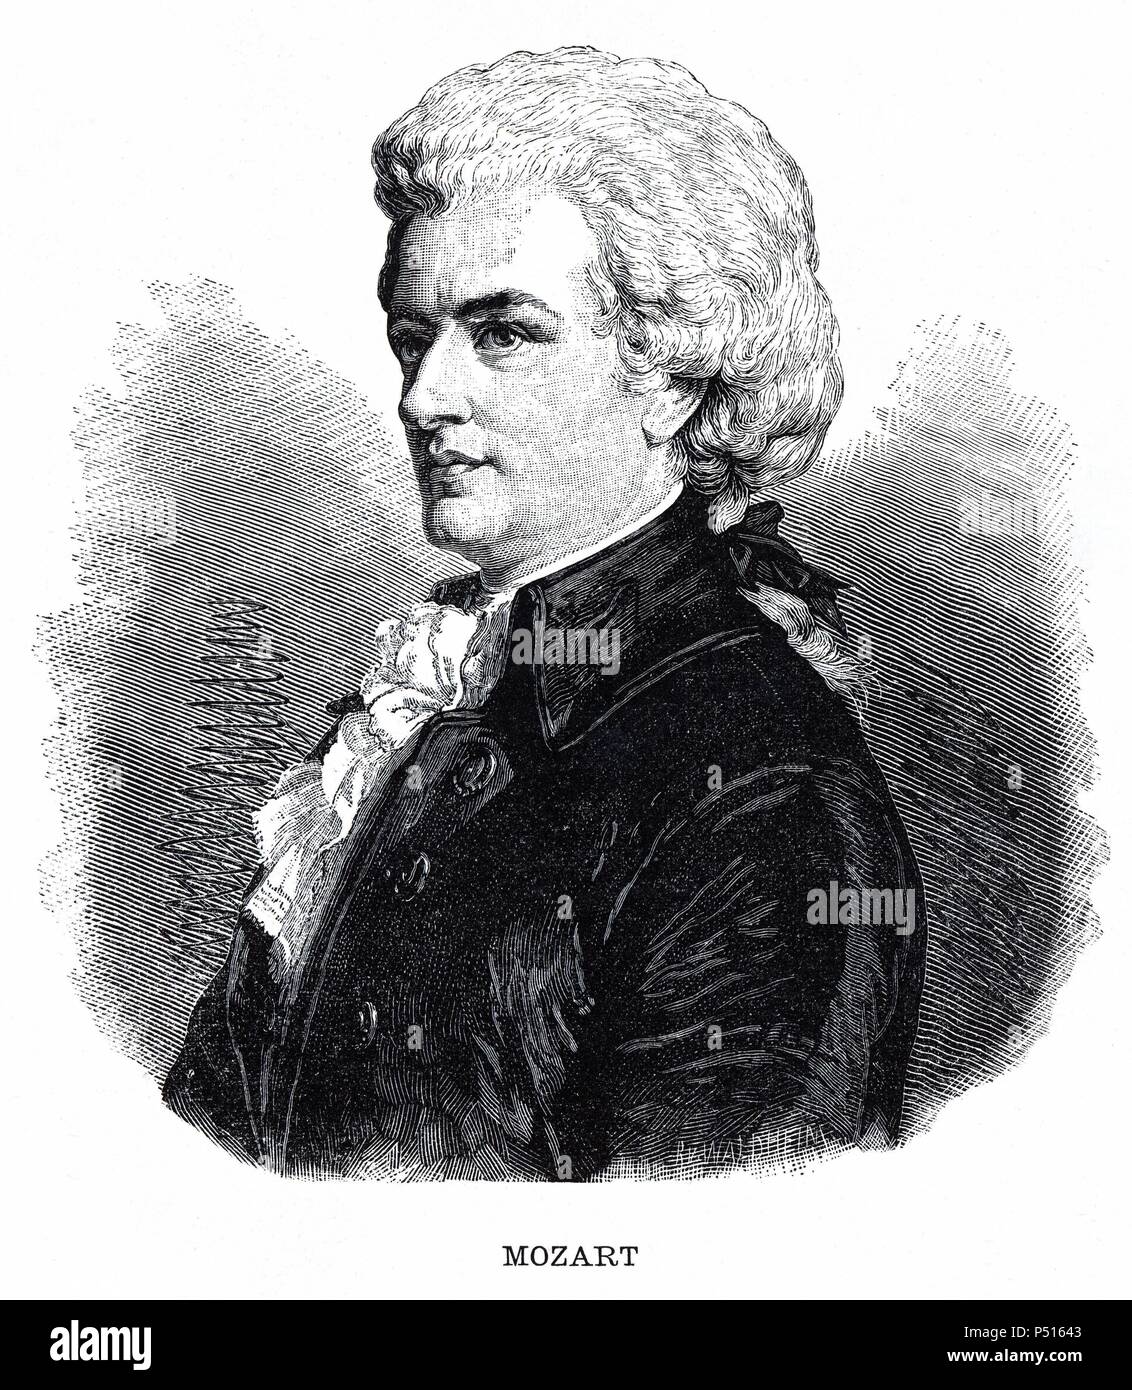 Johann Wolfgang Amadeus Mozart (Salzburg, 1756-Viena, 1791).Compositor austríaco de música clásica. Grabado de 1883. Stock Photo